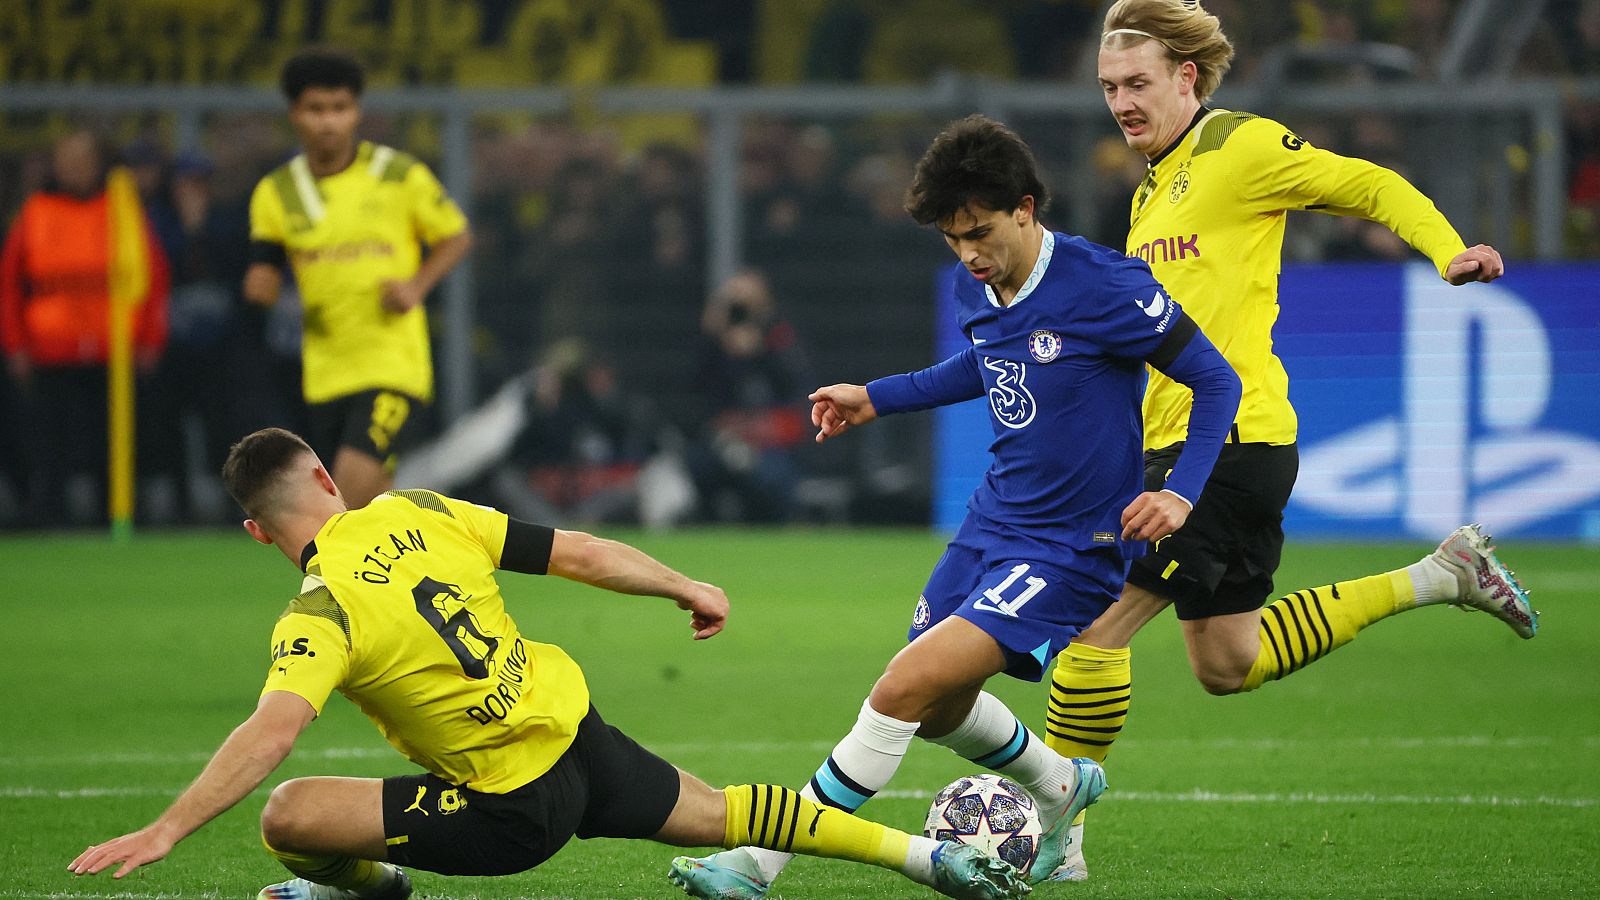 La eliminatoria entre Dortmund y Chelsea se decidirá en la vuelta